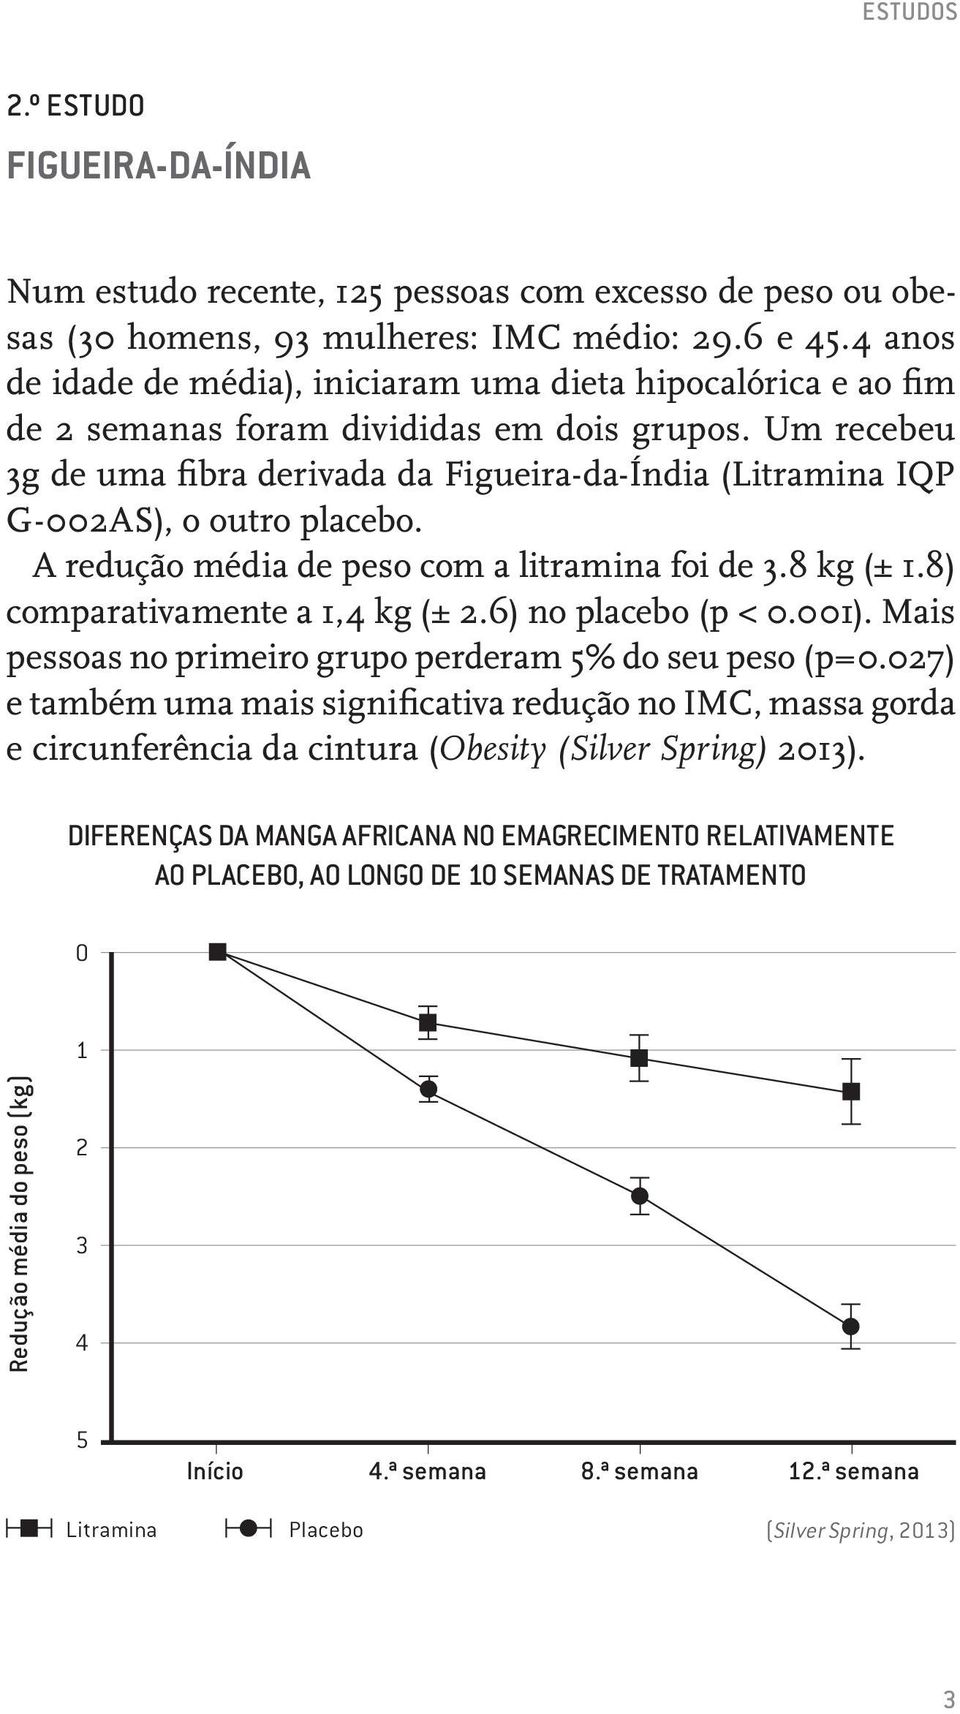 Um recebeu 3g de uma fibra derivada da Figueira-da-Índia (Litramina IQP G-2AS), o outro placebo. A redução média de peso com a litramina foi de 3.8 kg (± 1.8) comparativamente a 1,4 kg (± 2.